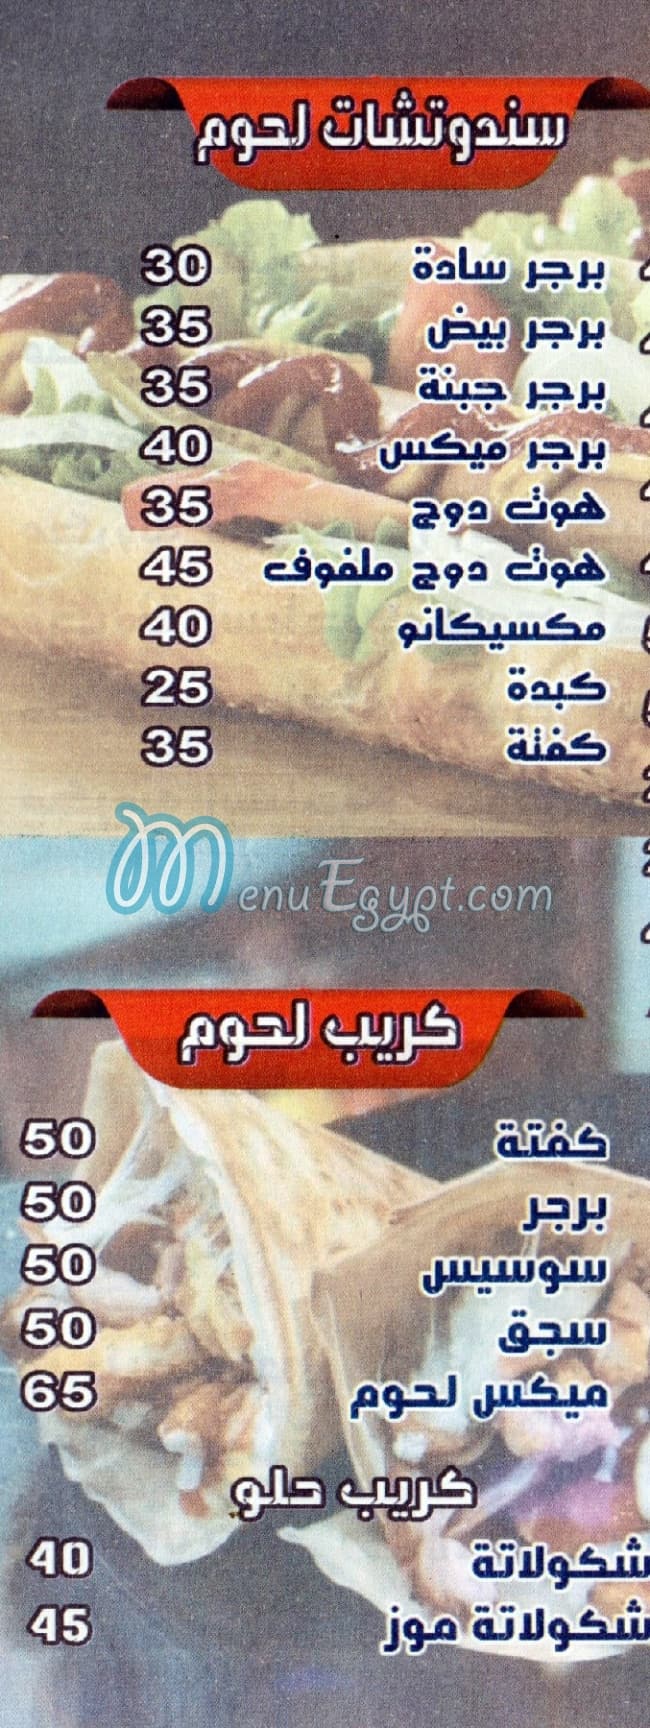 مطعم كشري الامل مصر